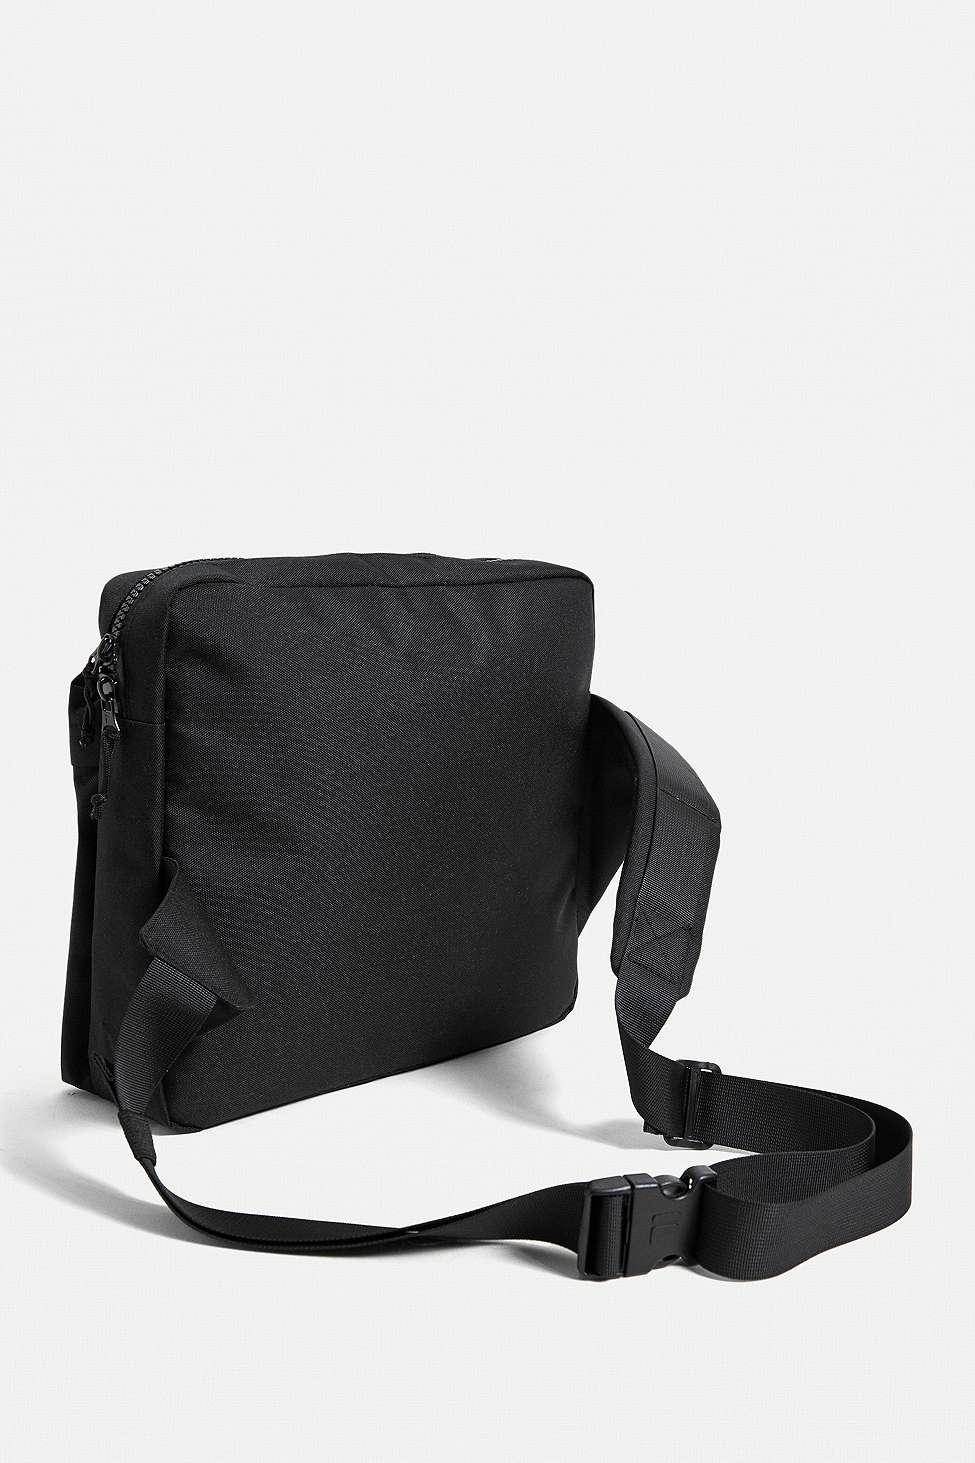 Fila Synthetic Lister Messenger Bag in Black for Men - Lyst